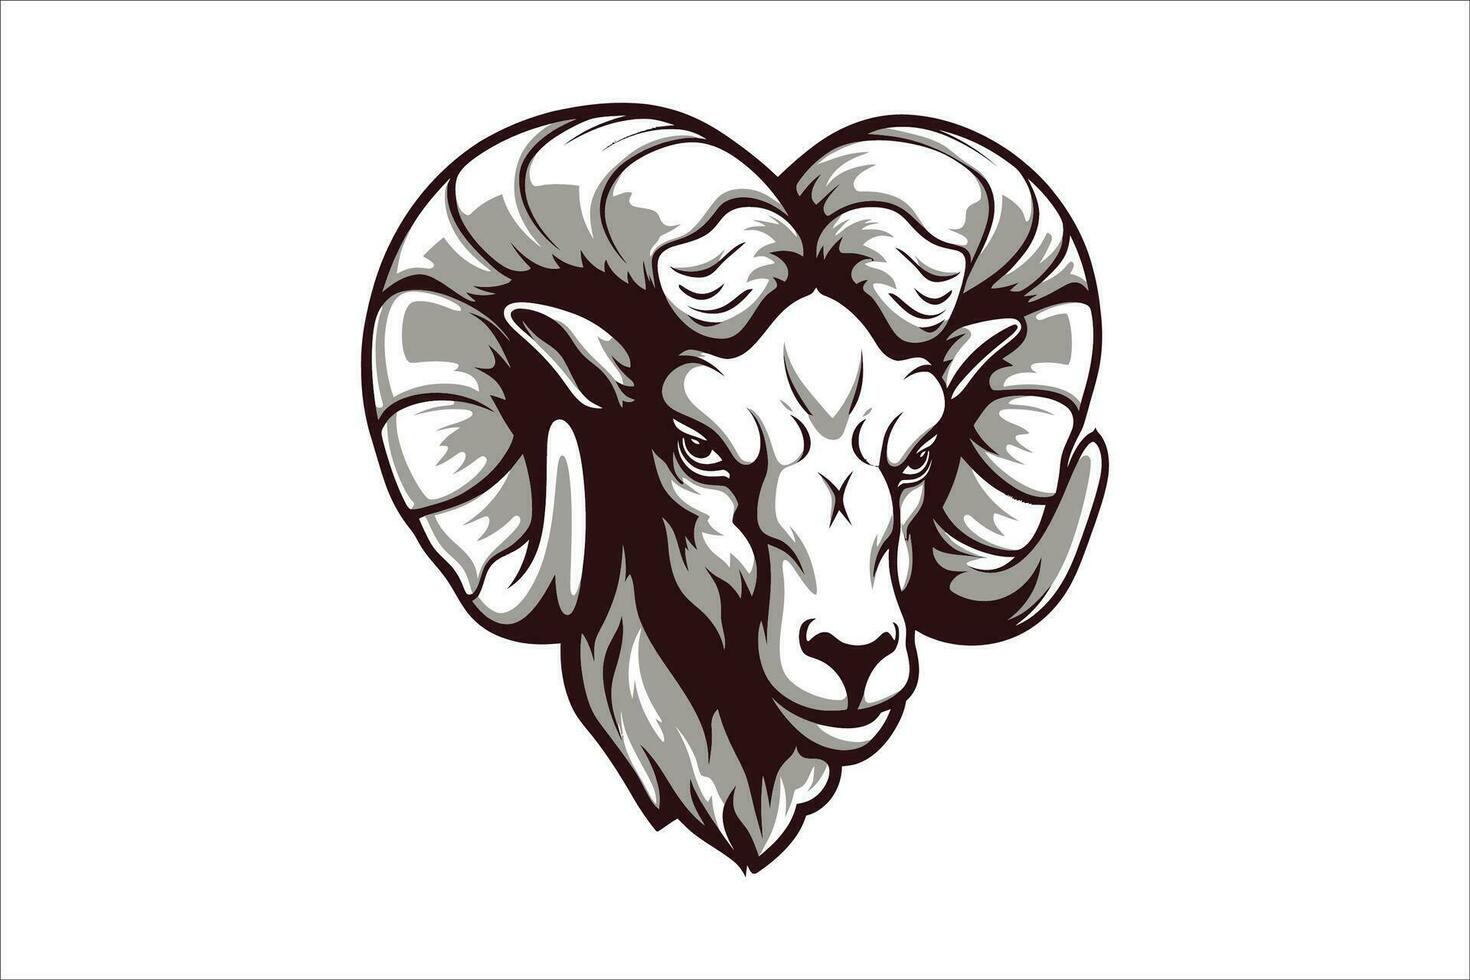 RAM chèvre mouton tête mascotte logo vecteur